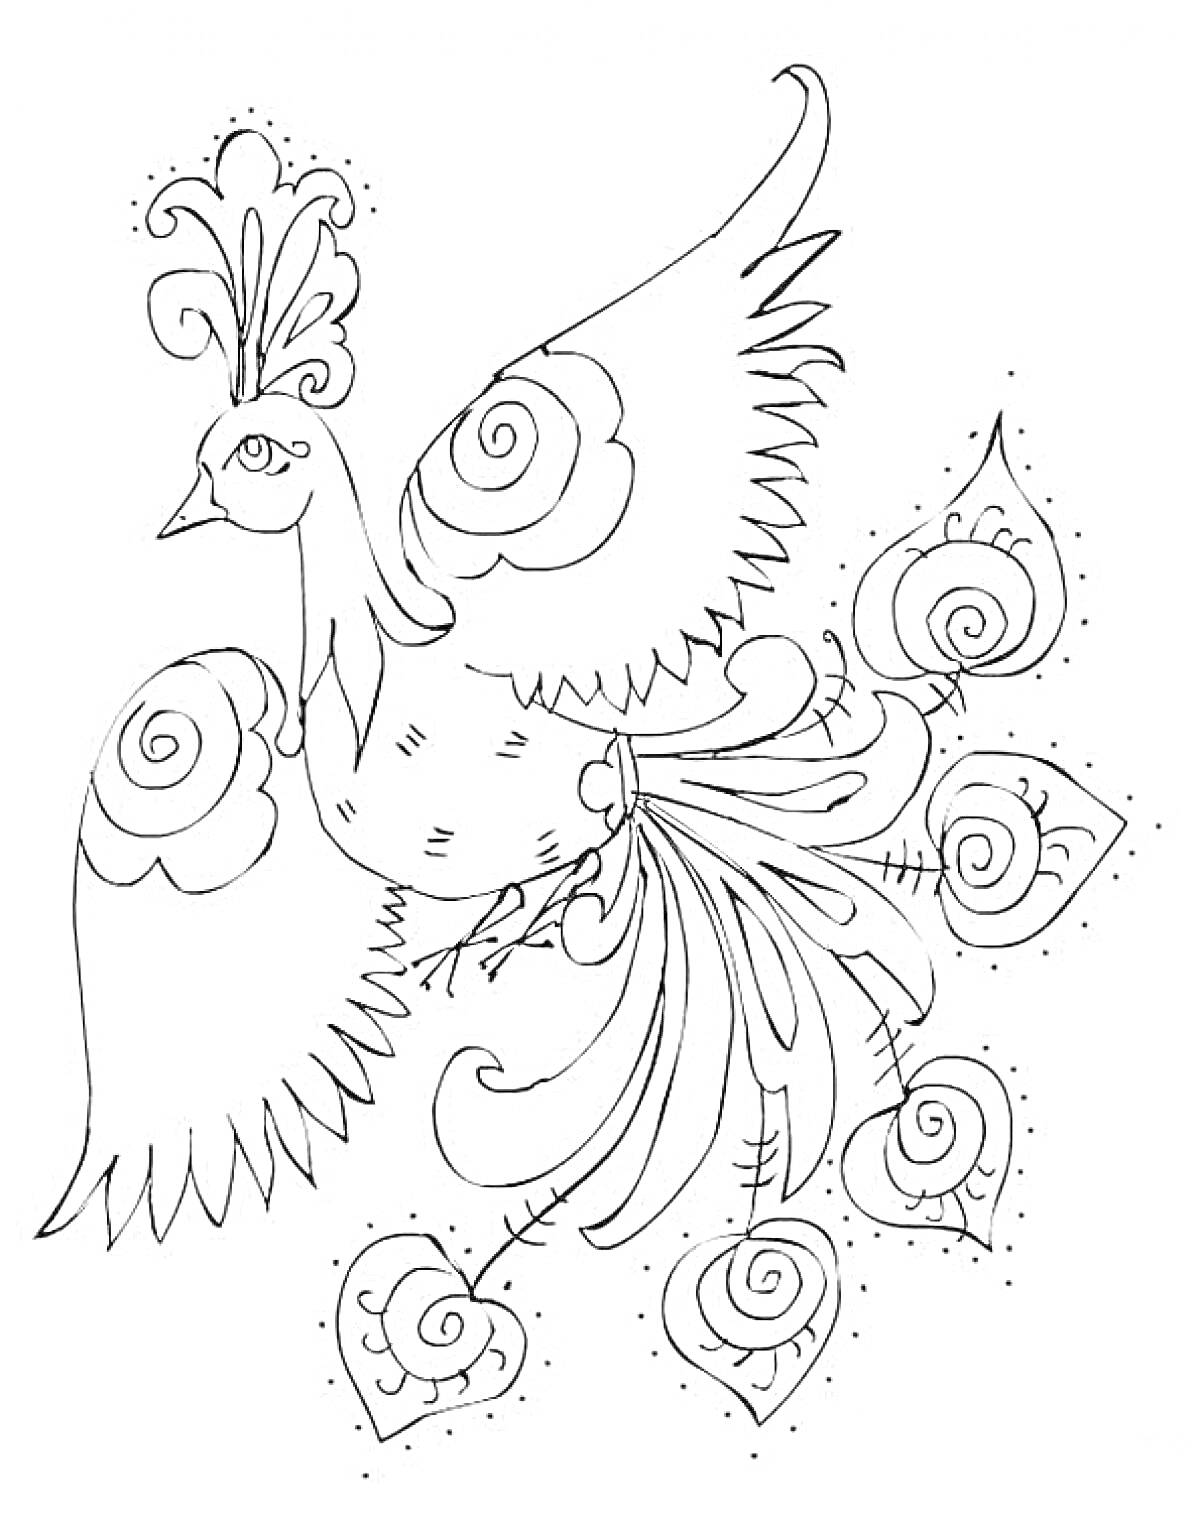 Раскраска Жар-Птица, летящая с распахнутыми крыльями, узорчатые перья на крыльях и хвосте, сложный рисунок узоров